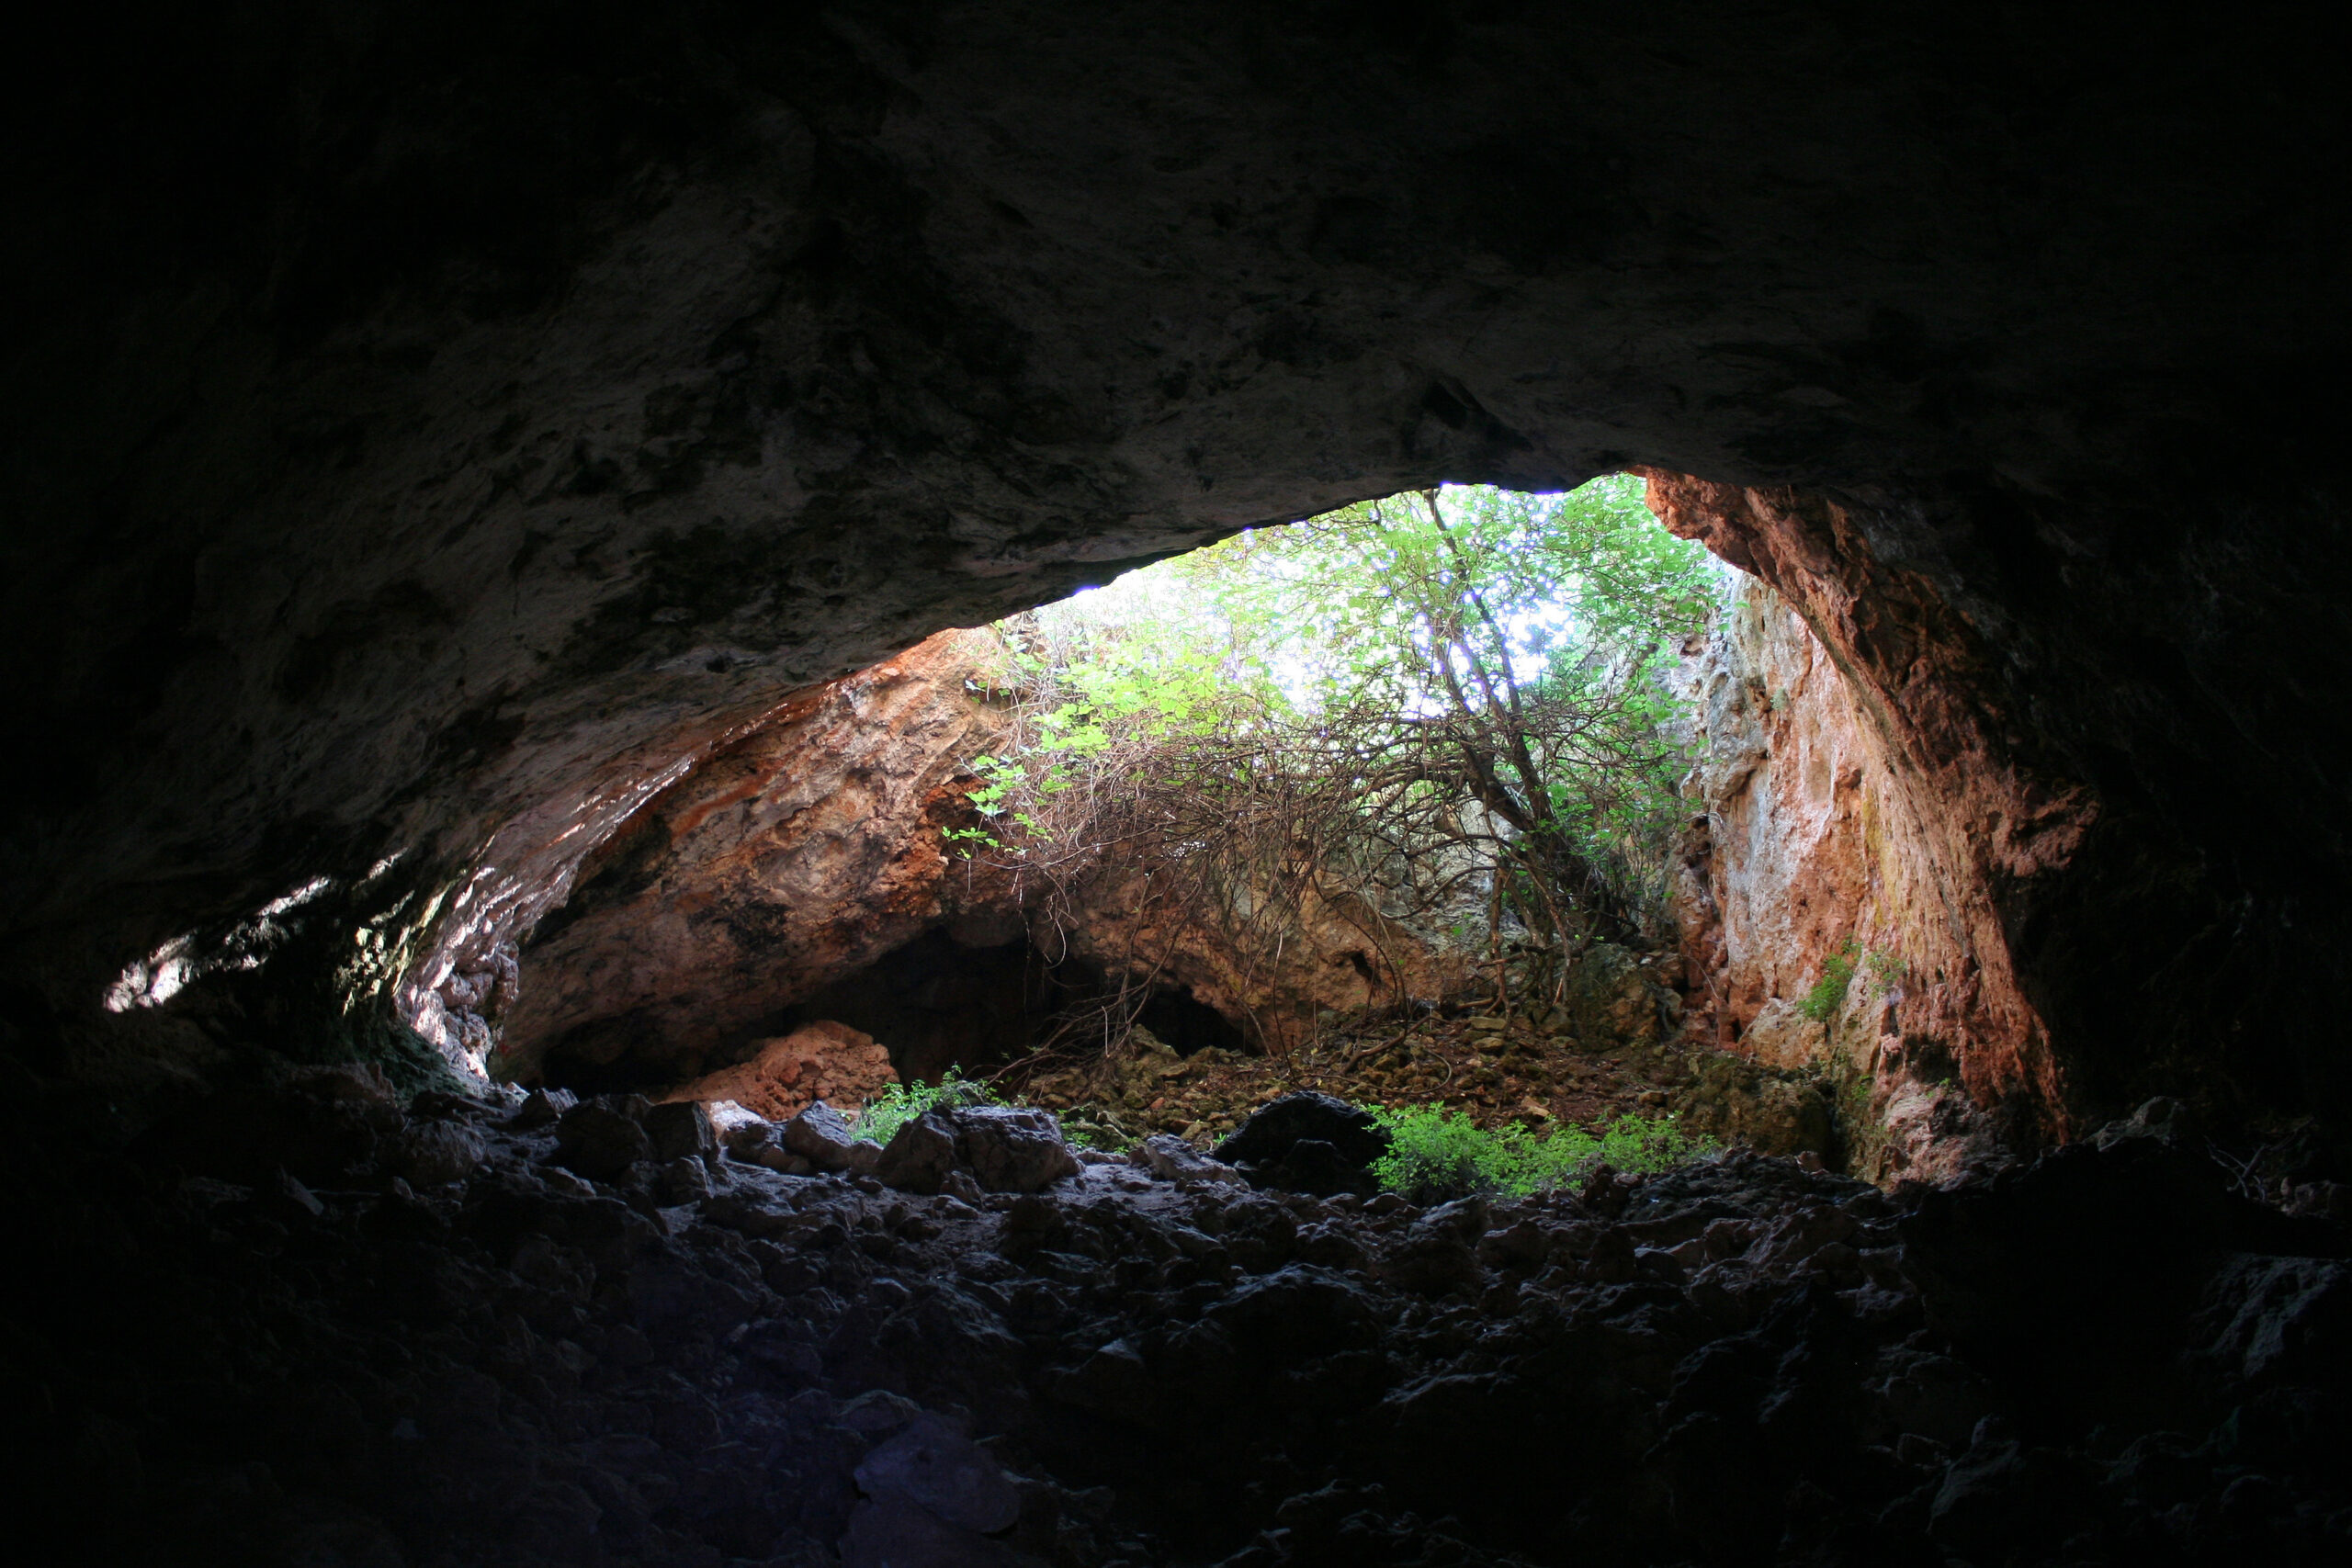 Cueva de los Marmoles View of the cave entrance from inside.